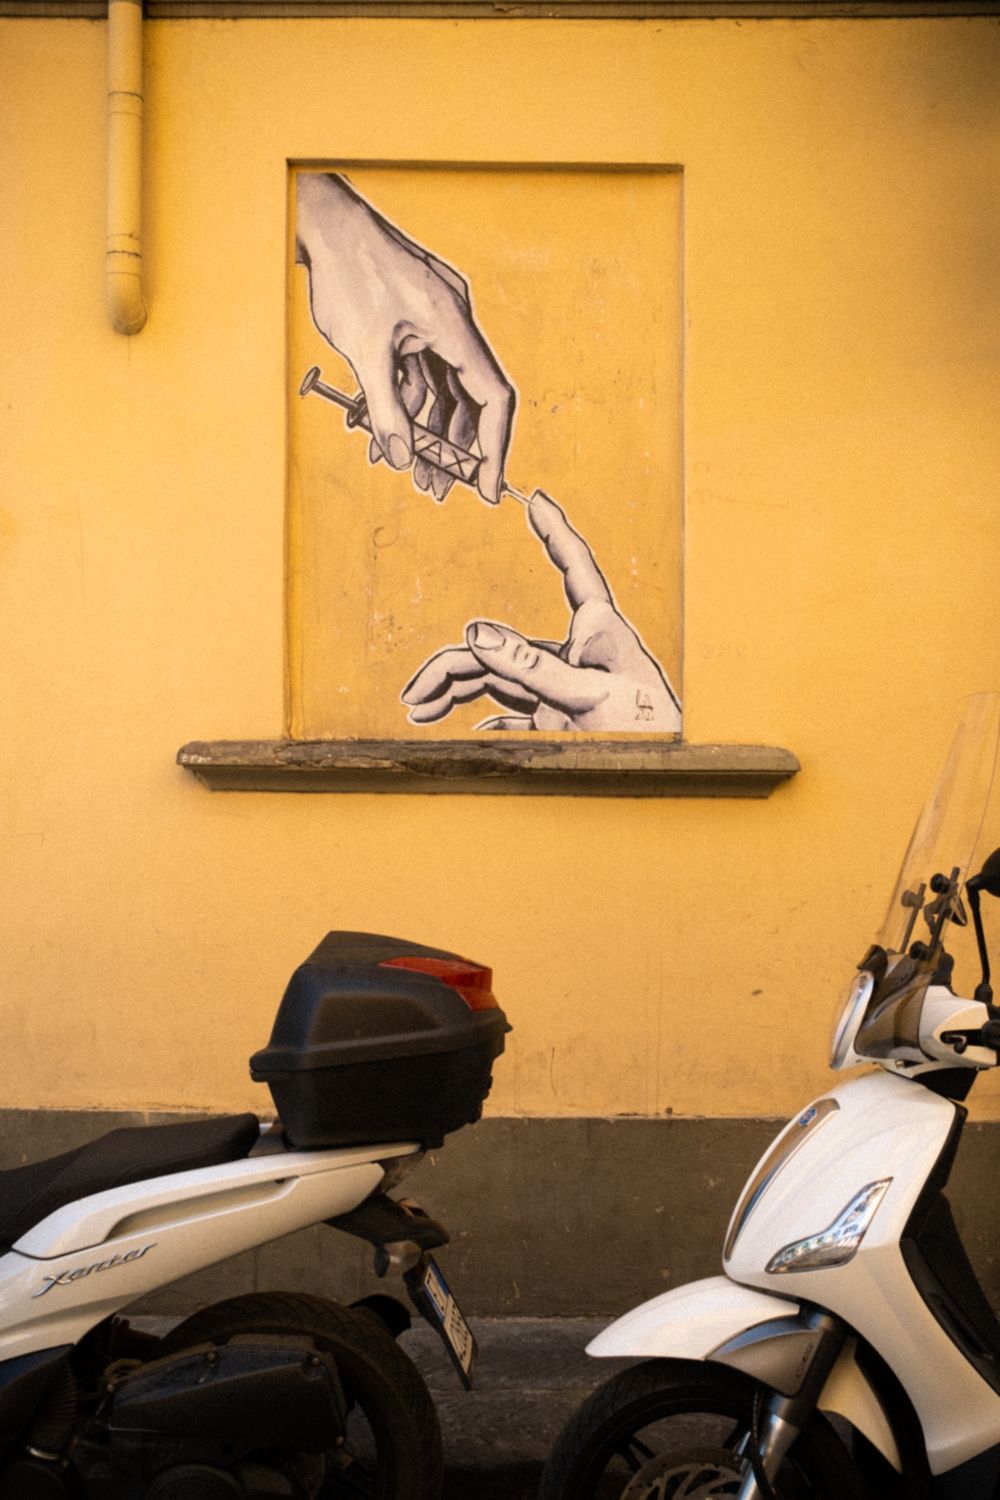 Street Art in Florenz. In einem blinden Fensterrahmen befindet sich ein Mural mit der Adaption von Gottes Hand aus der Sixtinischen Kapelle in Rom. Gott hält hier aber eine Spritze in der Hand und sticht in die andere.